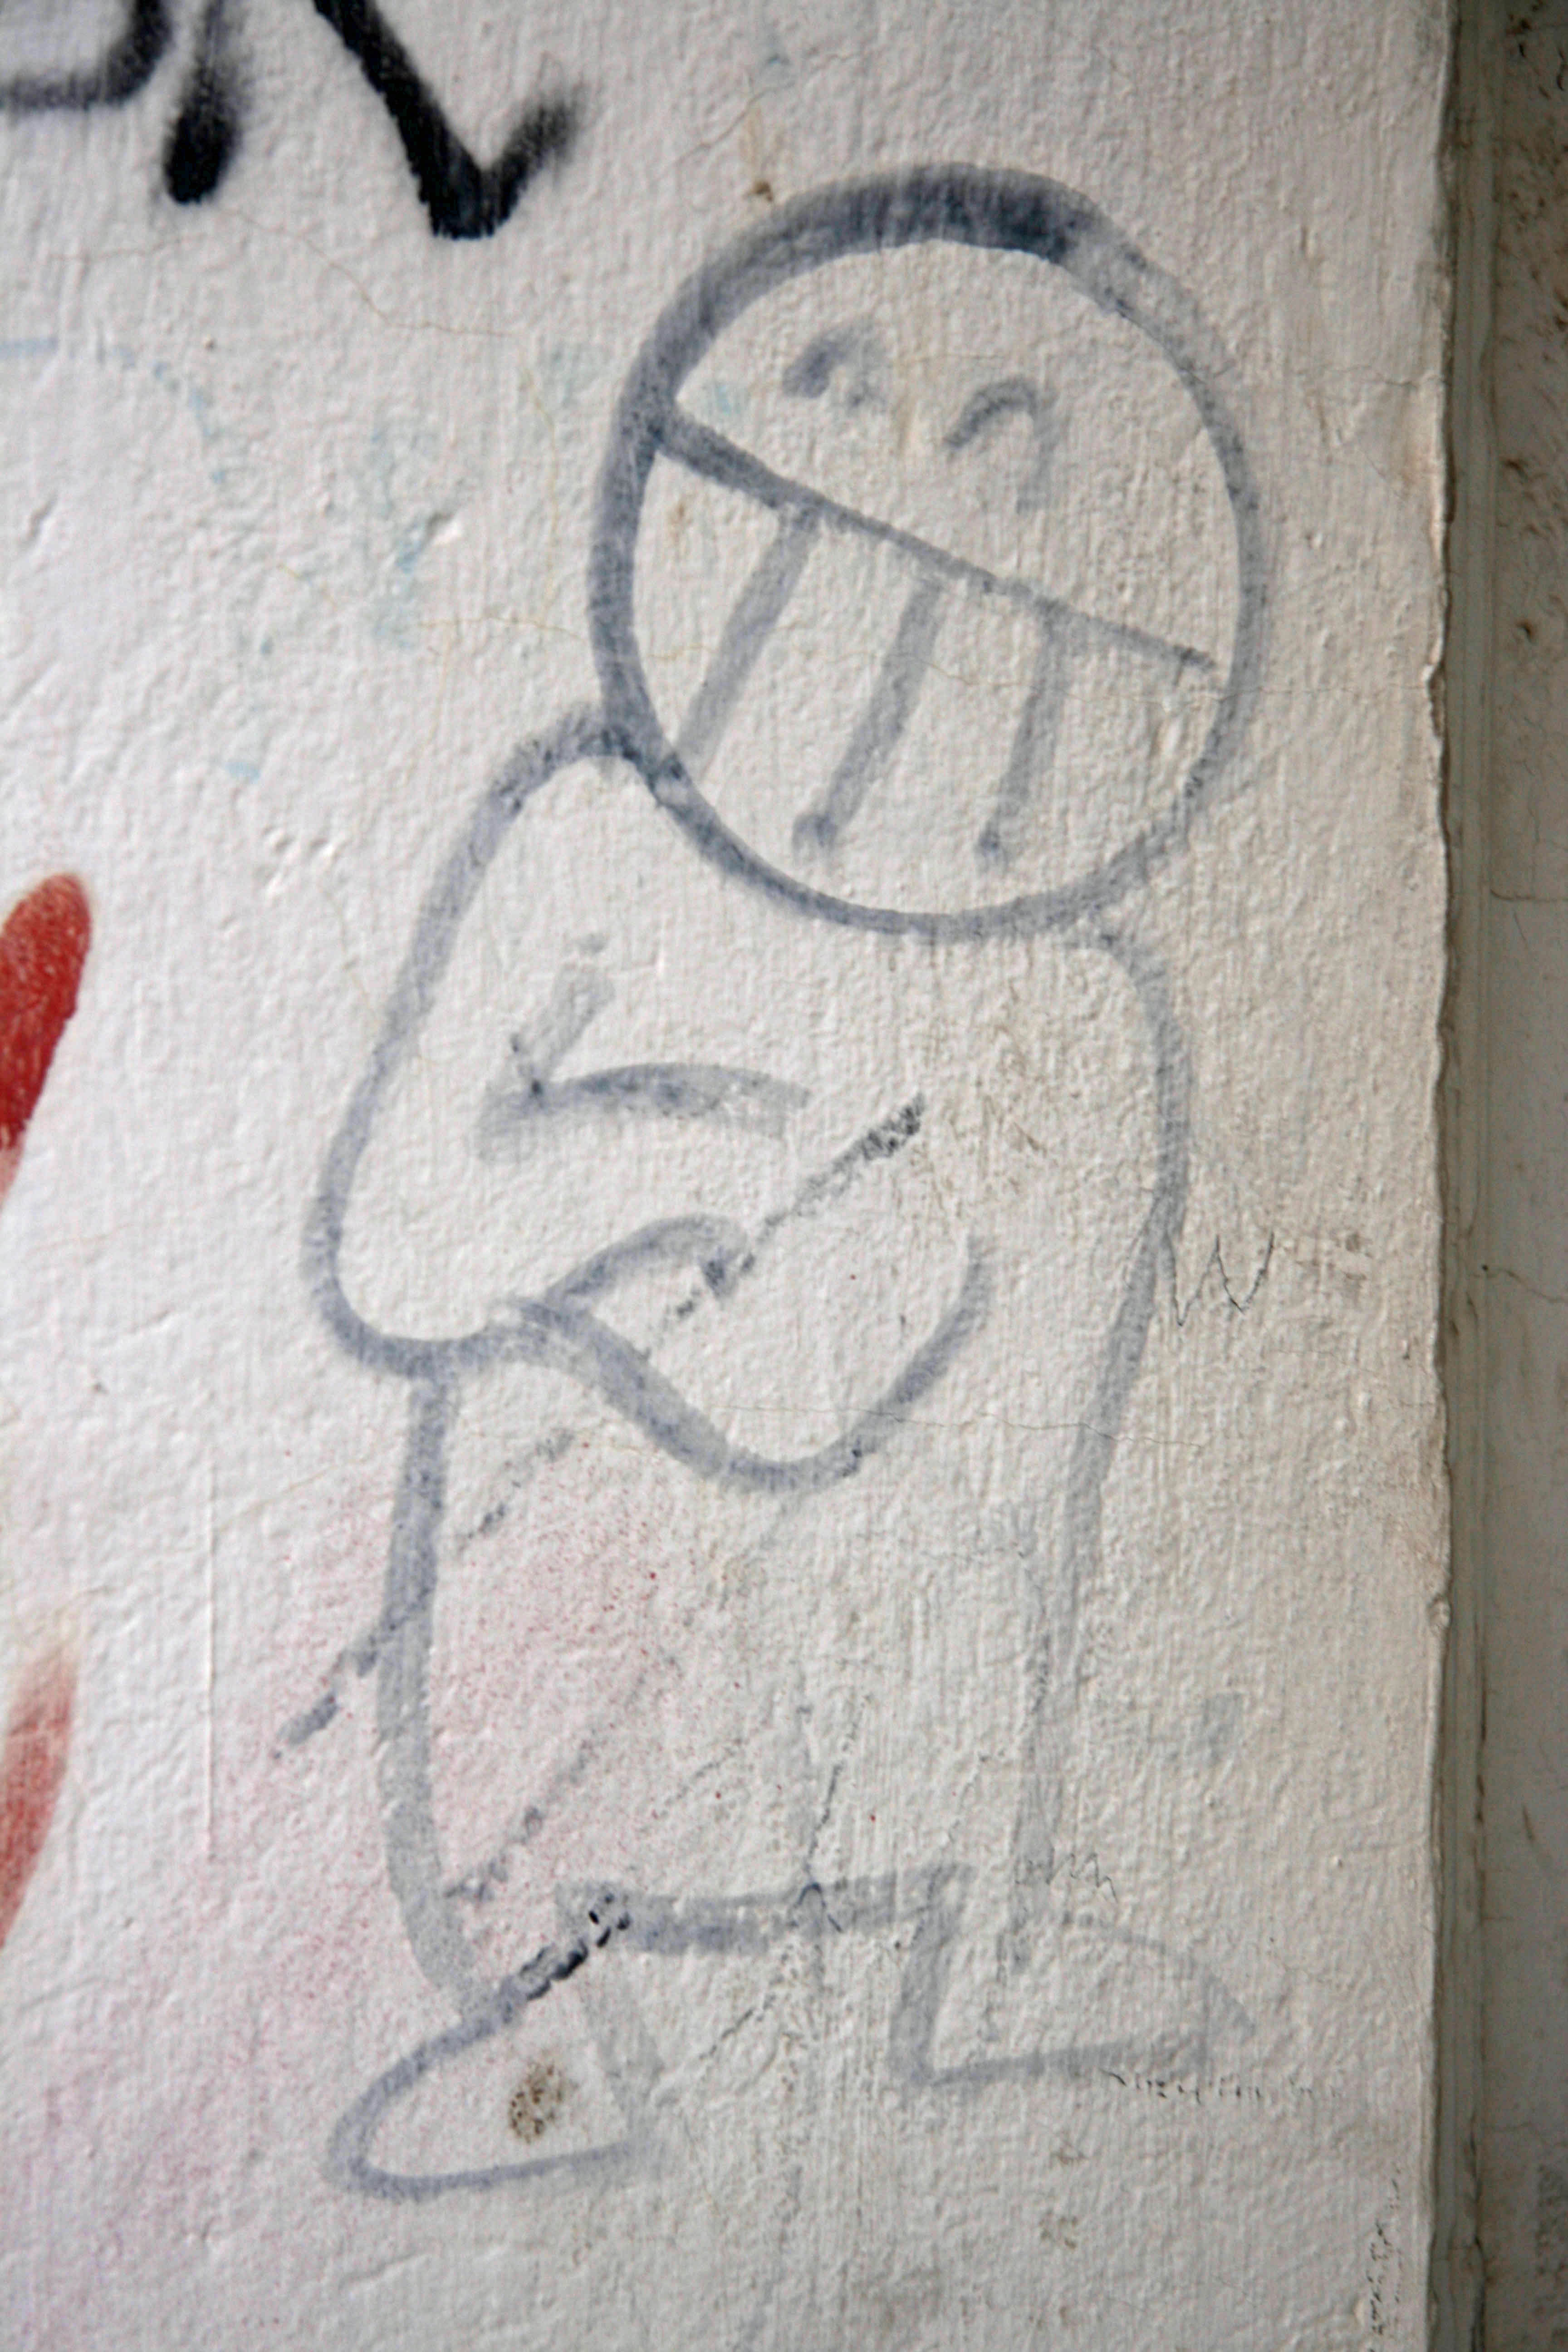 Smiley Man: Street Art by Mein Lieber Prost (often shortened to Prost) in Berlin